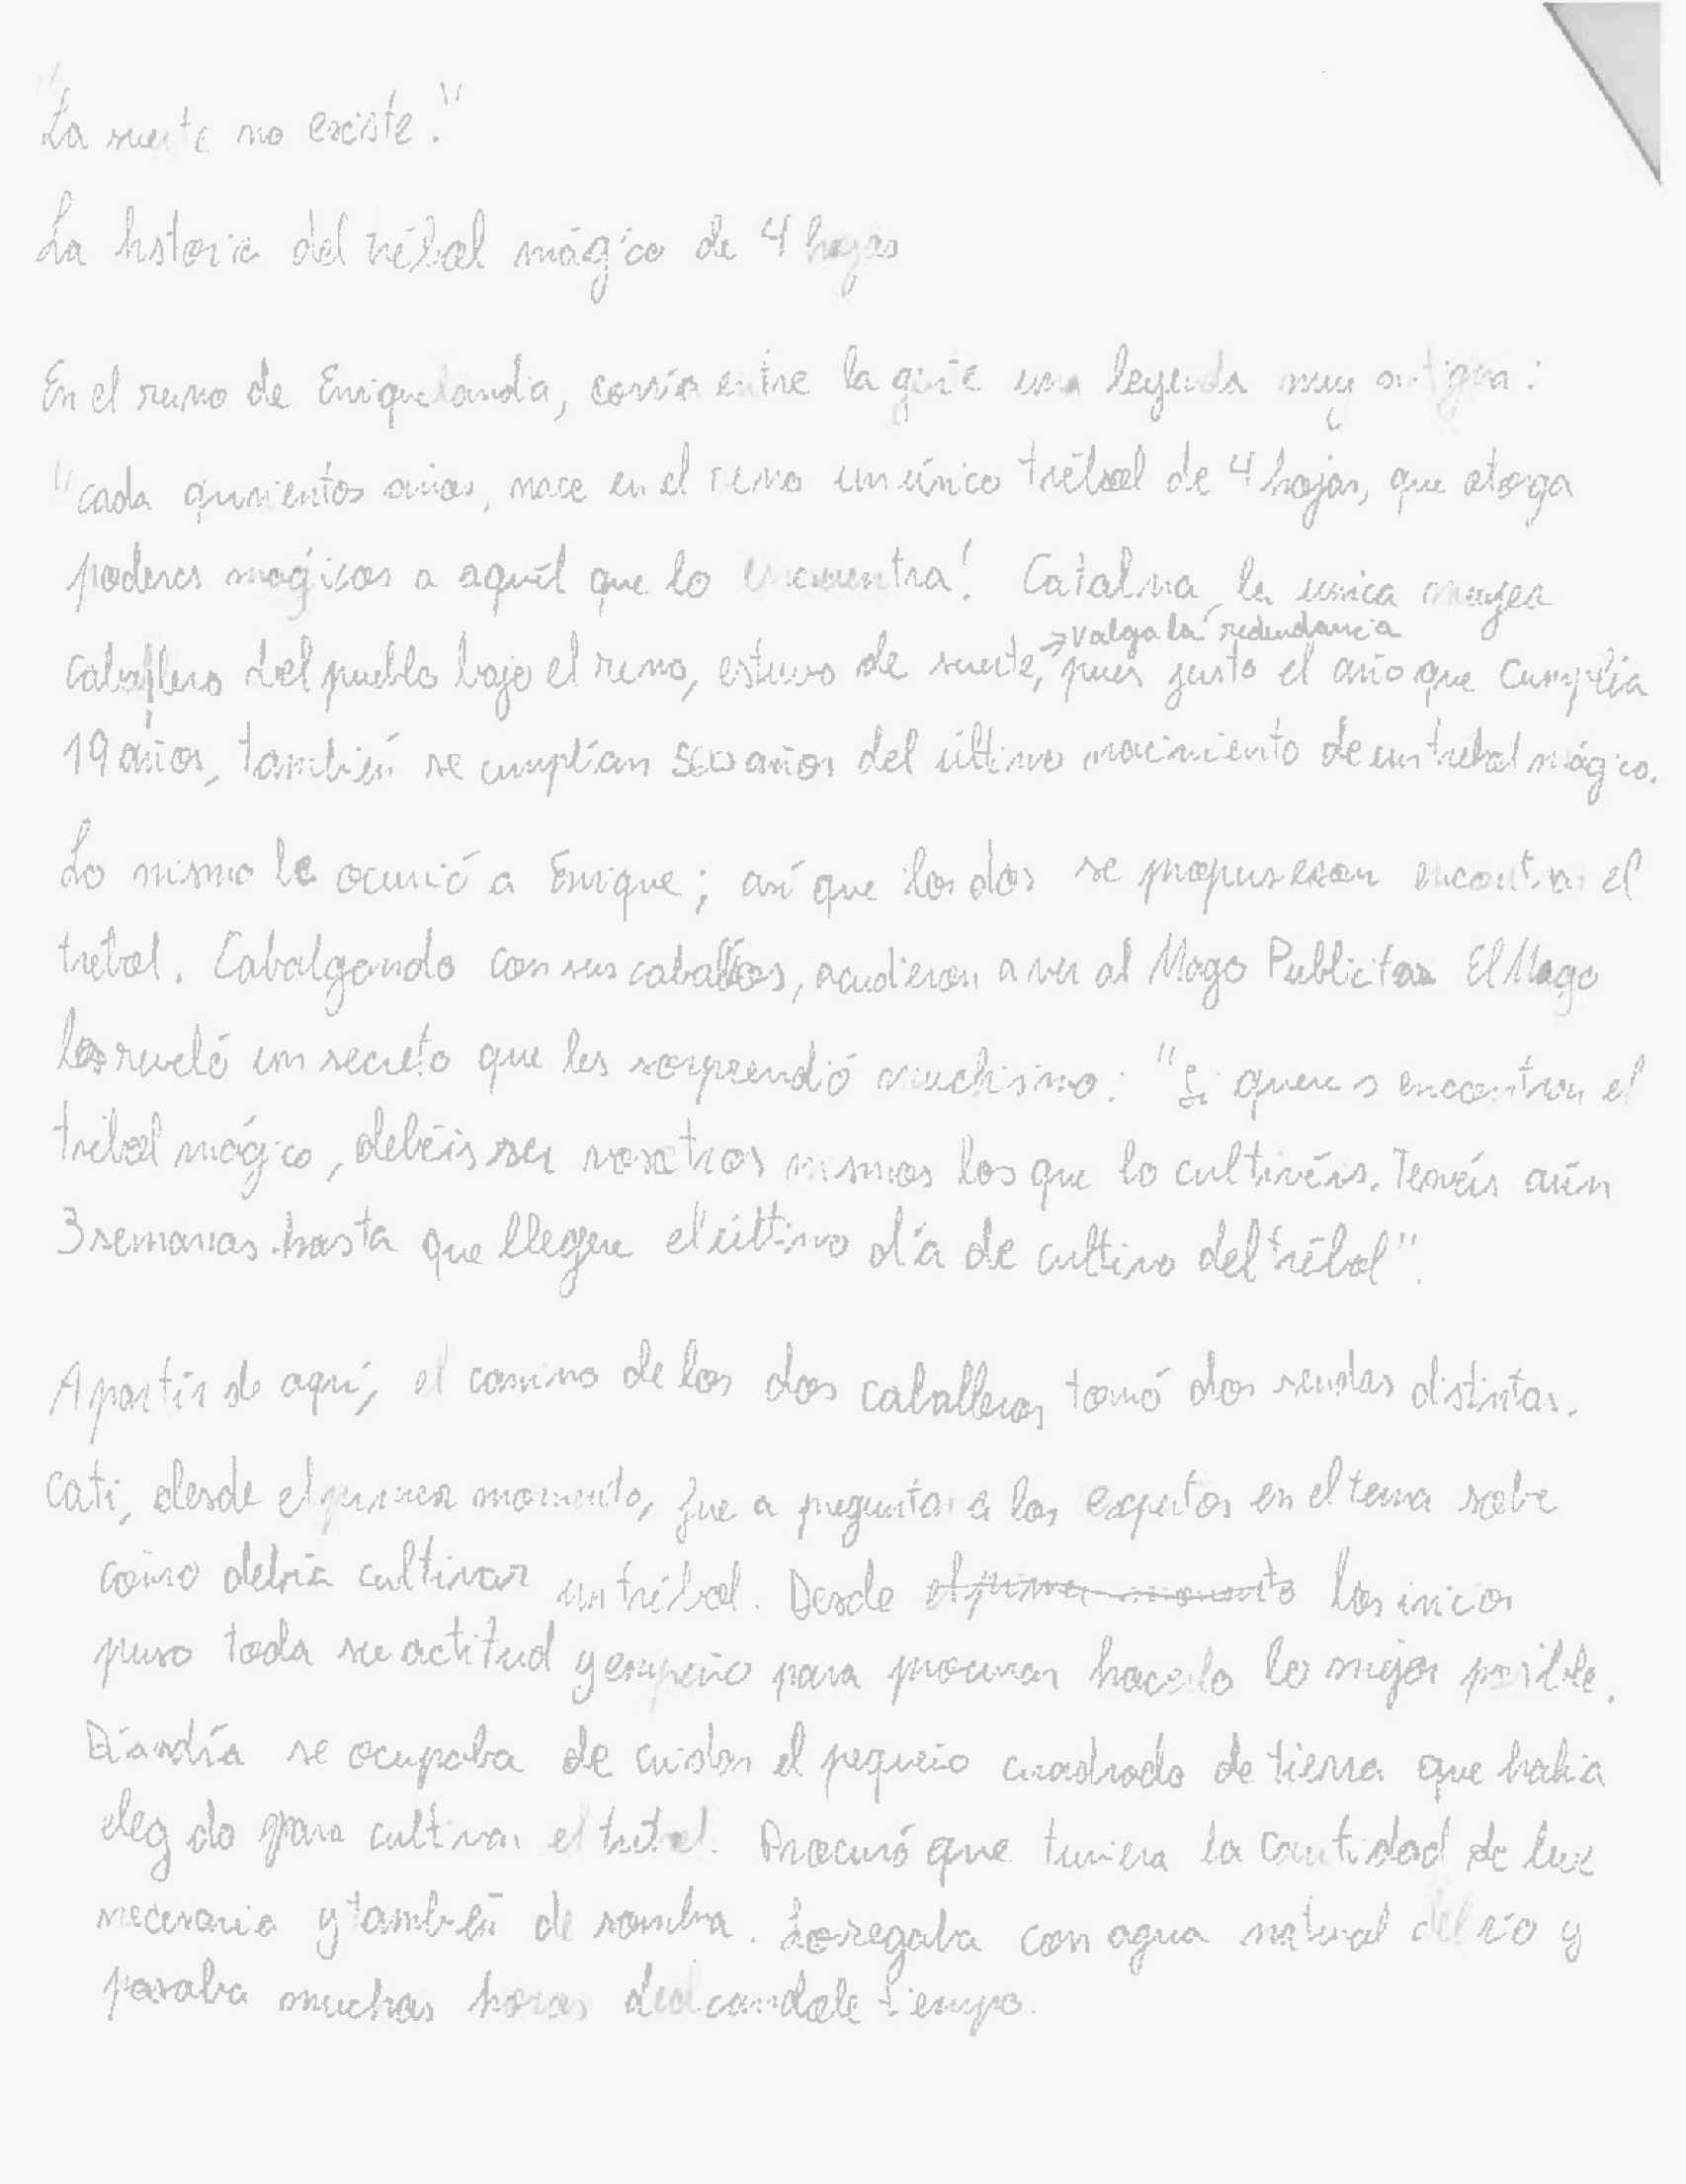 Primera parte del relato que Enrique Ruiz escribió en su examen de Publicidad.